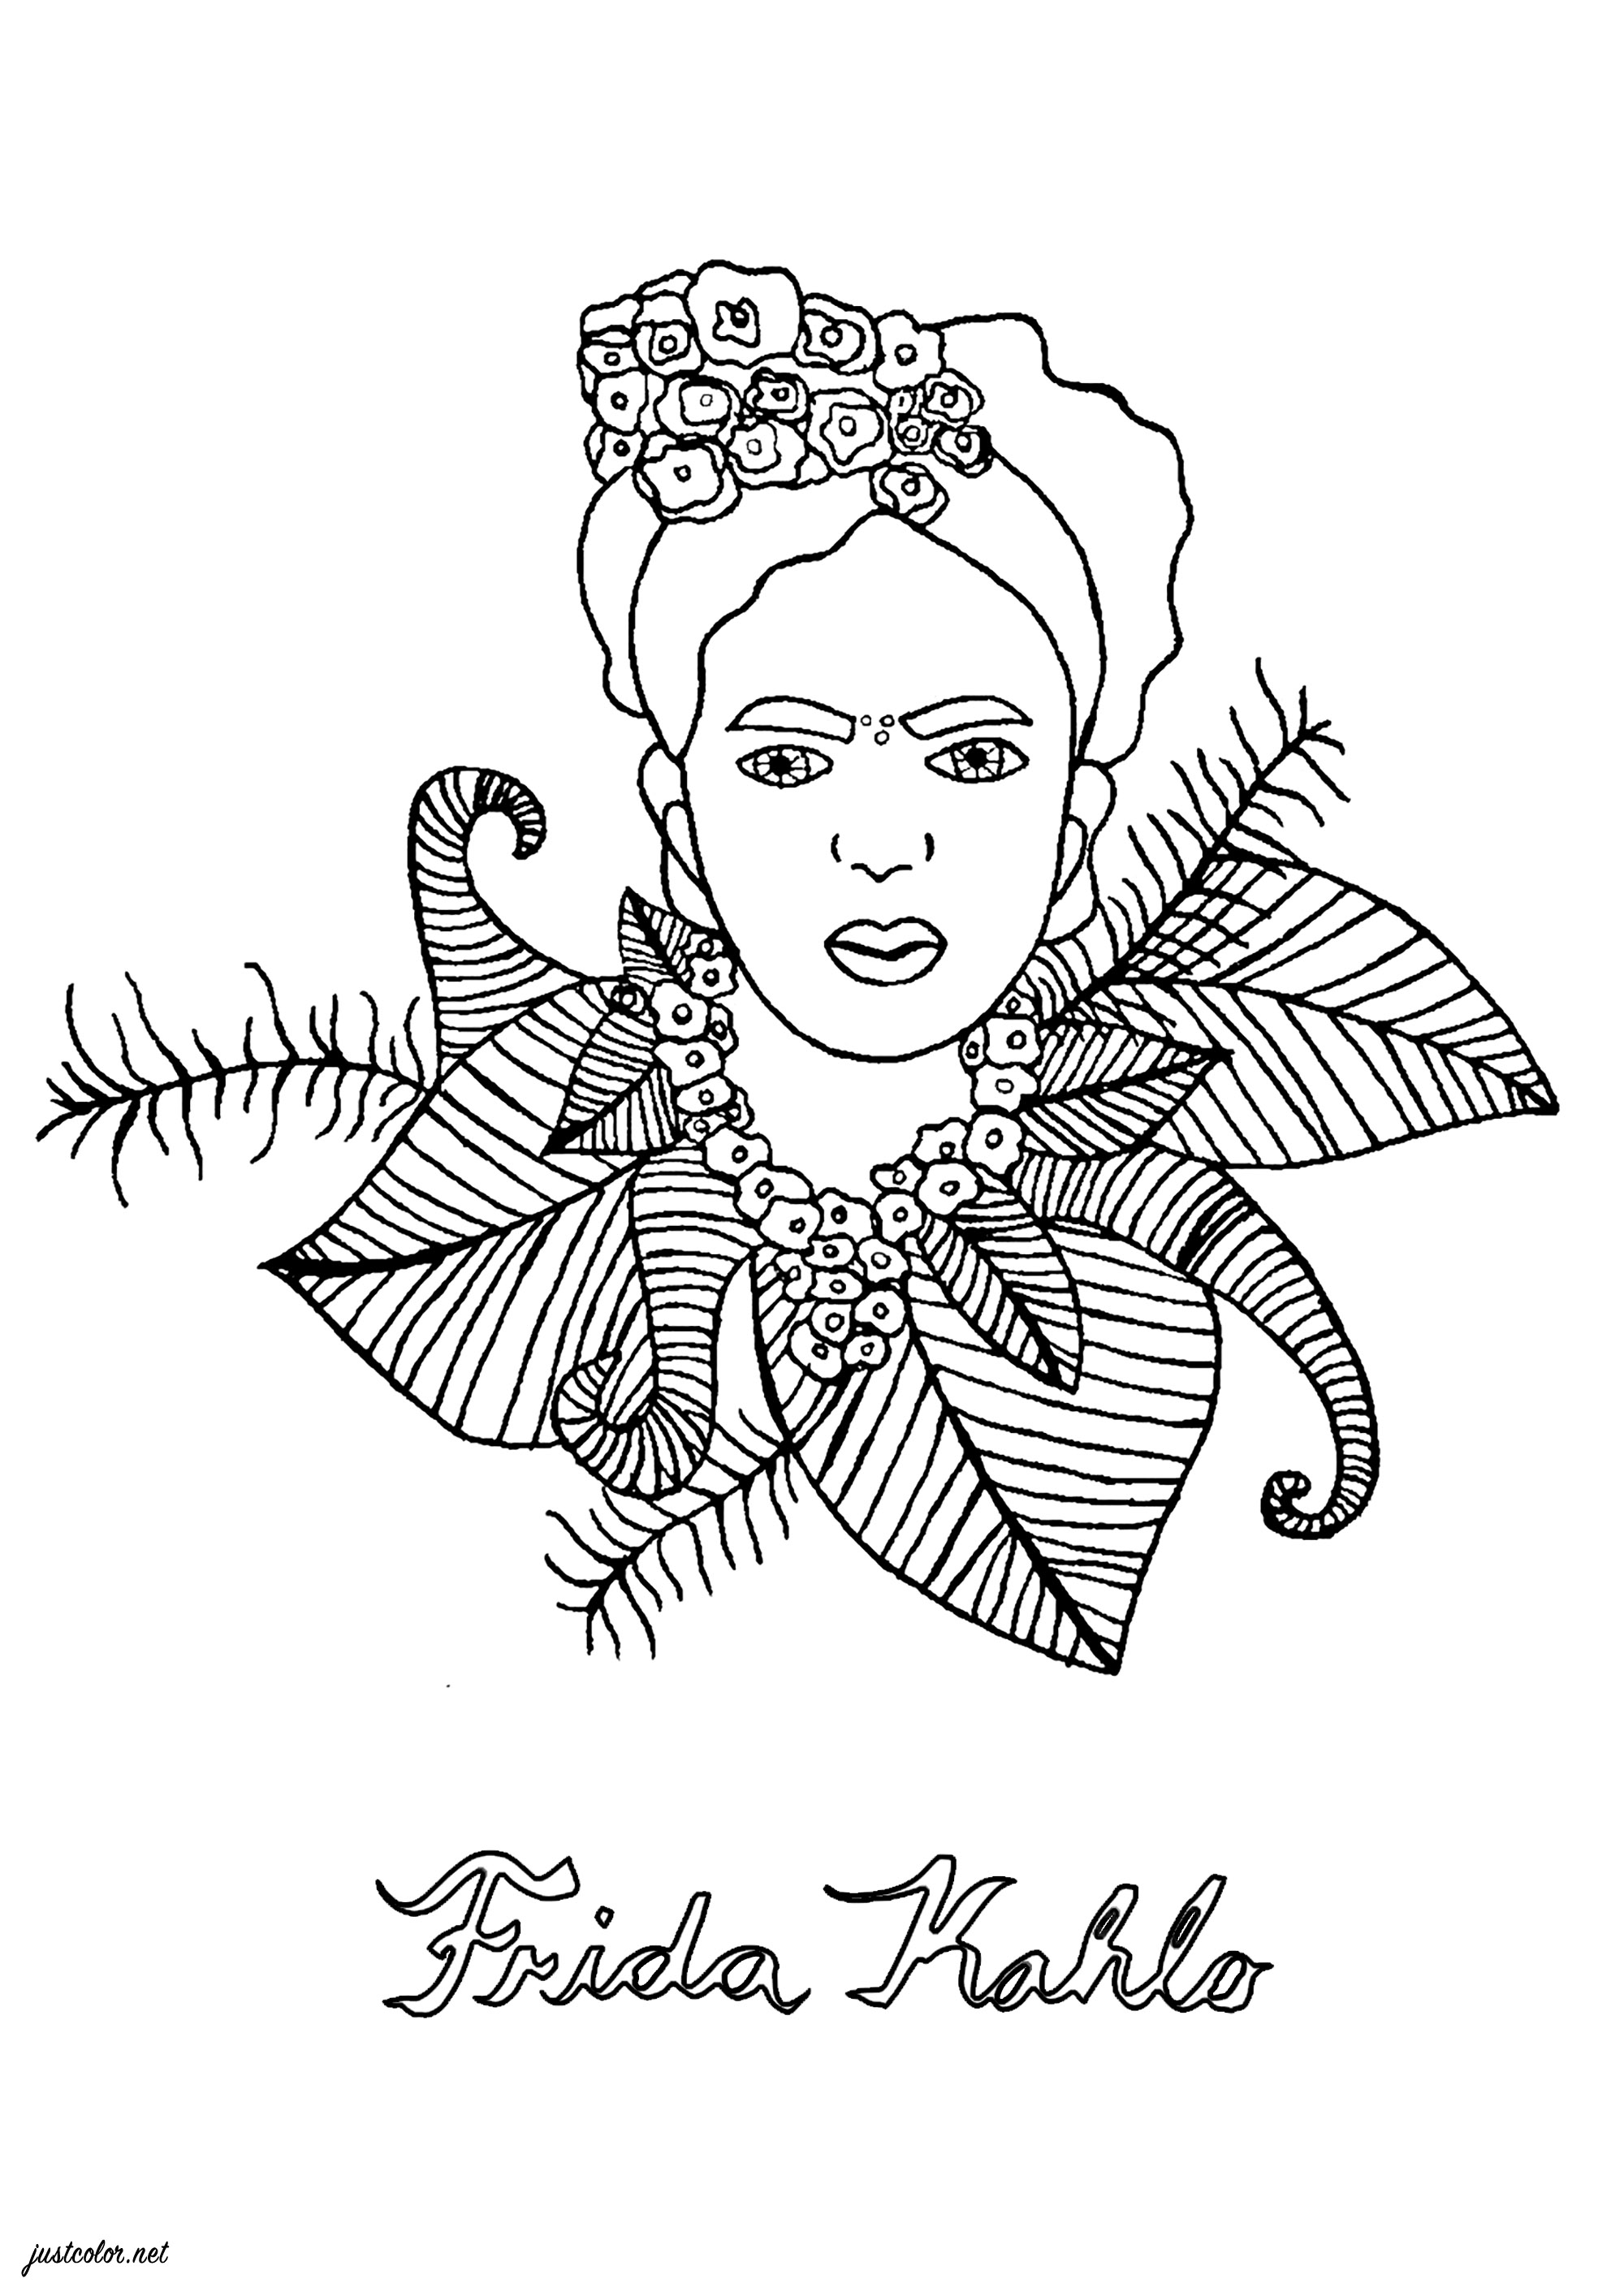 Einfache Zeichnung zum Ausmalen, die Frida Kahlo darstellt